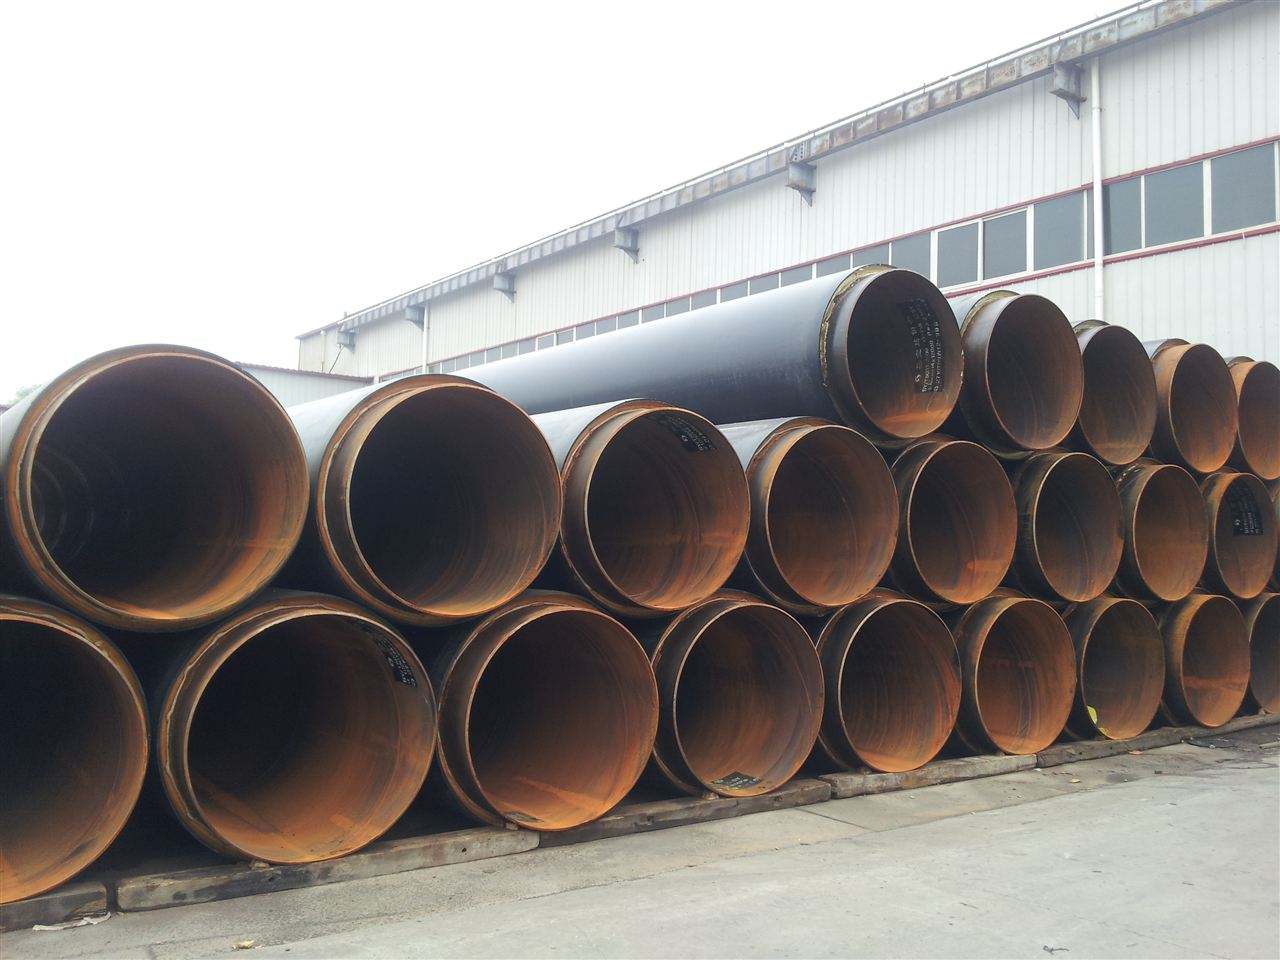 防腐钢管厂家—黑龙江聚氨酯保温钢管厂商出售